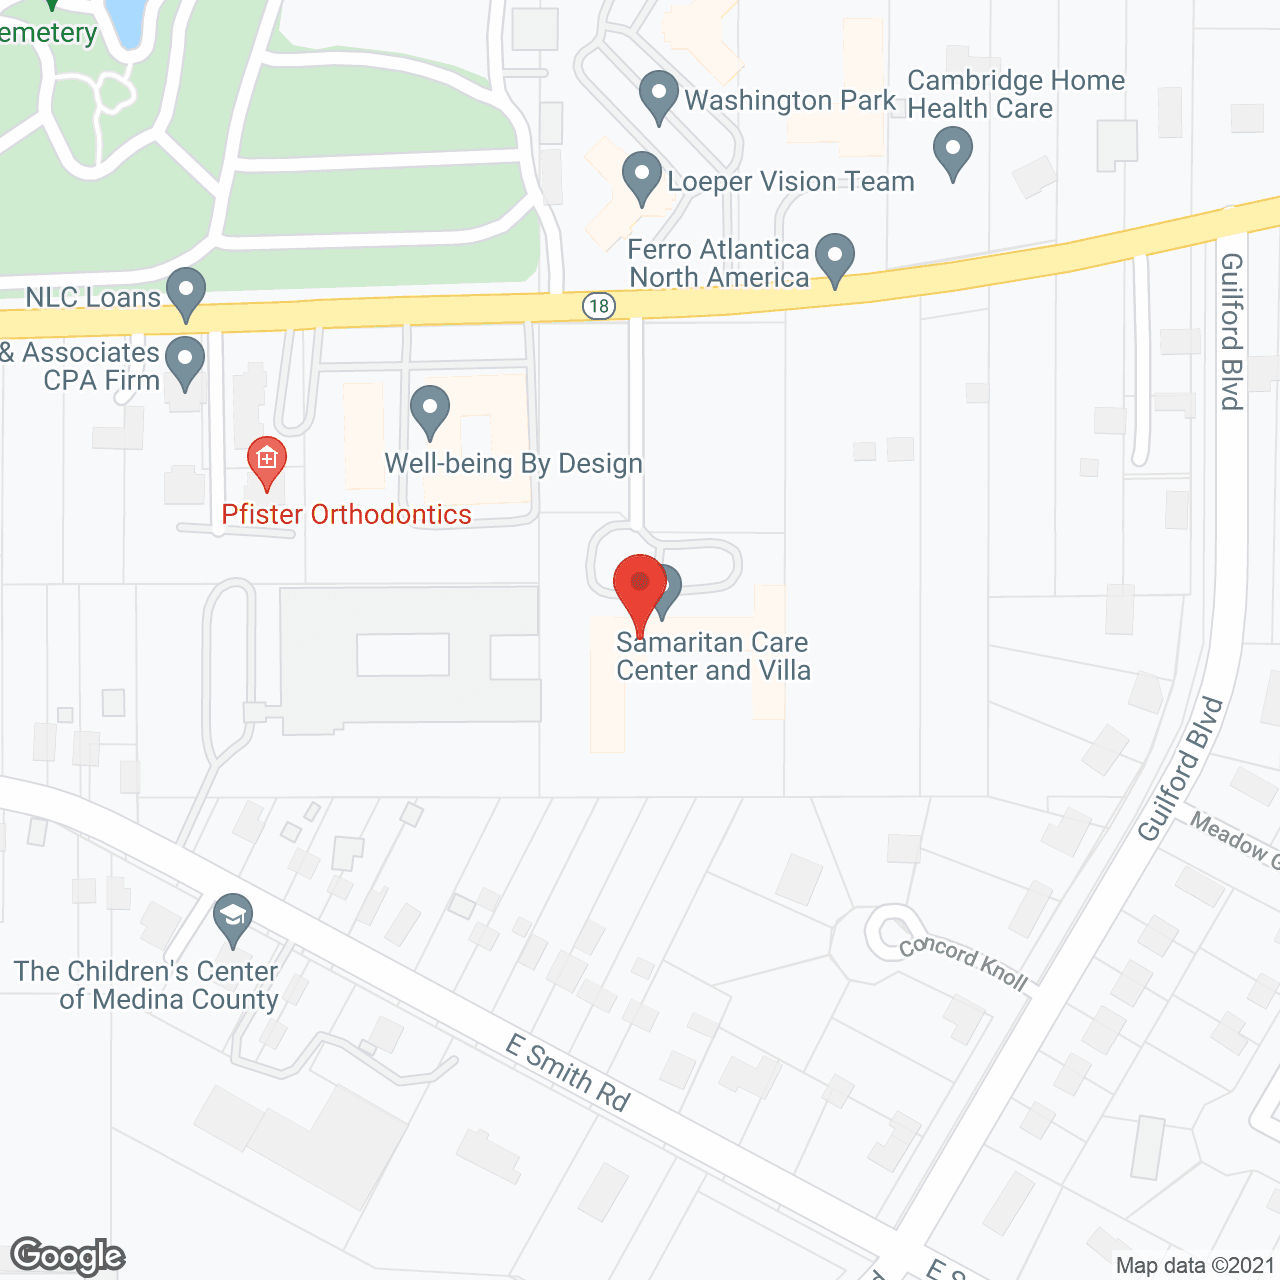 Samaritan Care Center in google map